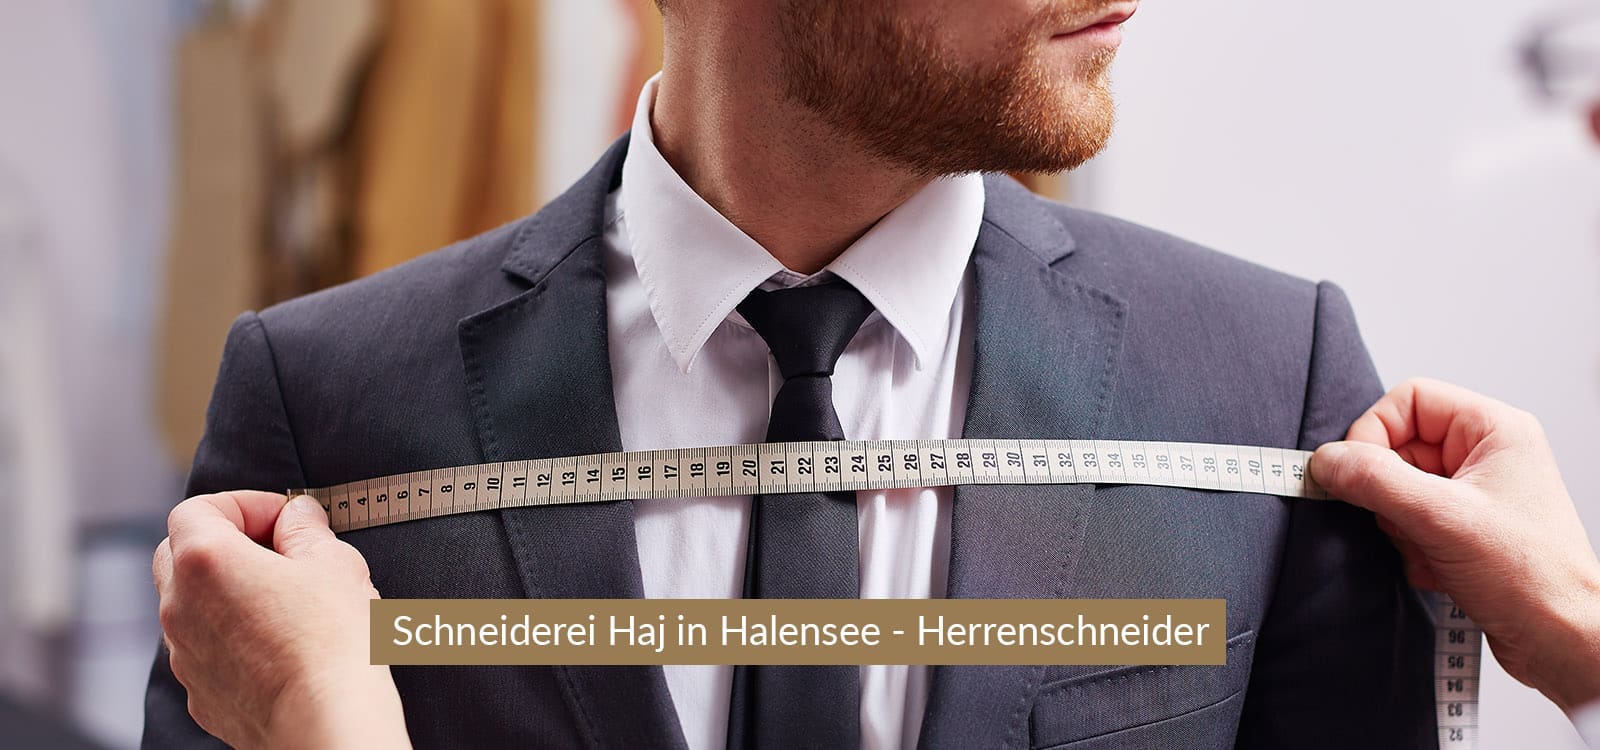 schneiderei-halensee-header-desktop-1600x750-herrenschneider